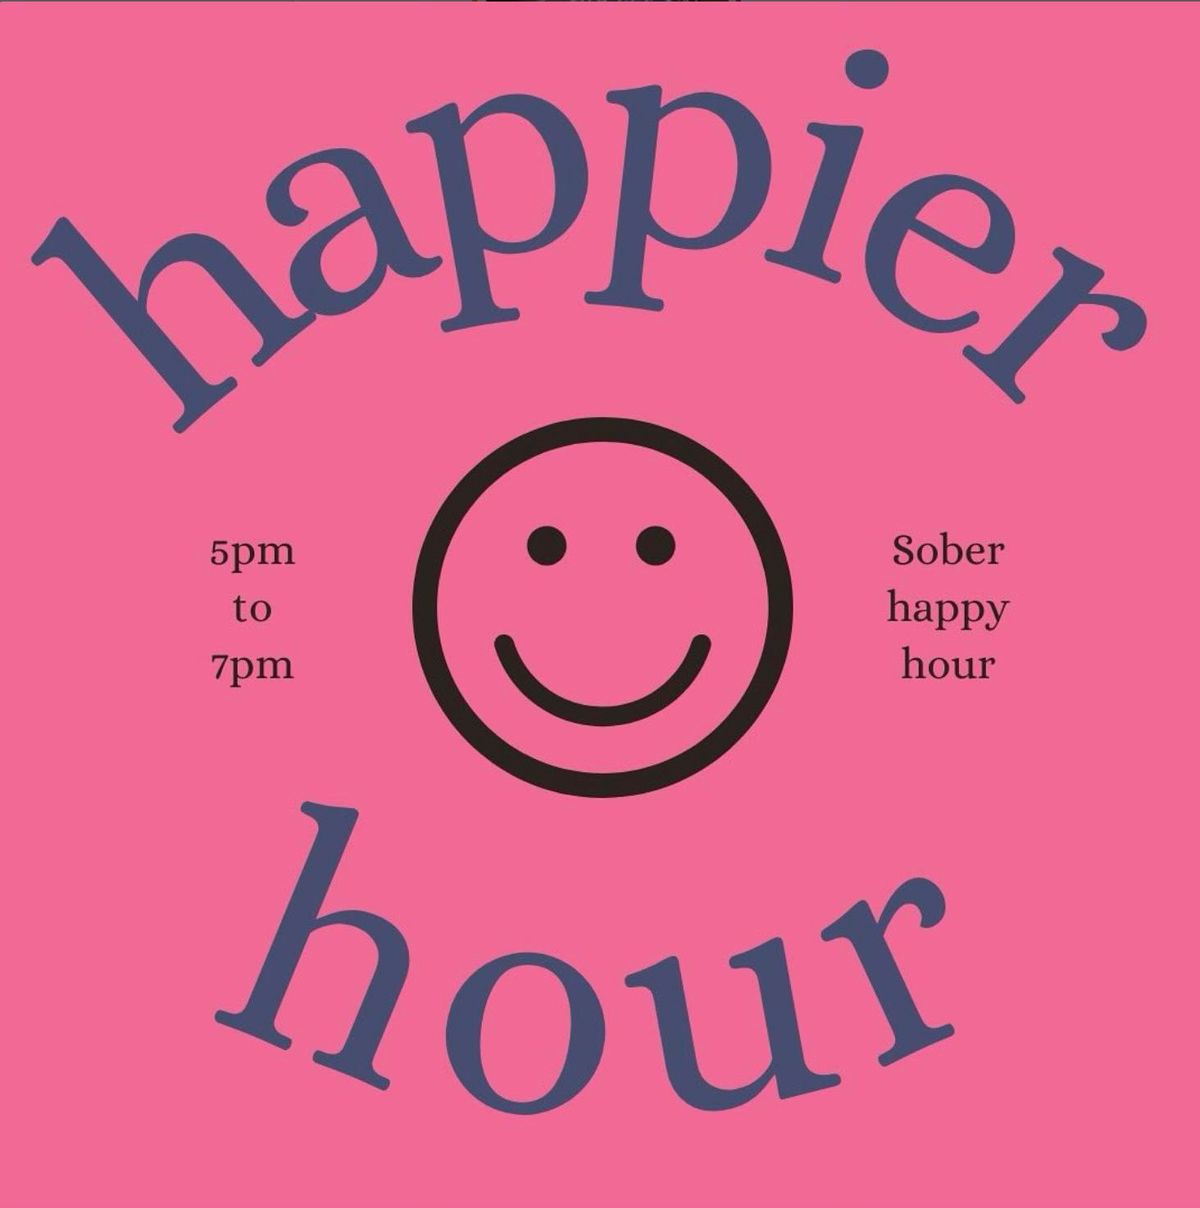 Happier Hour - Sober Happy Hour